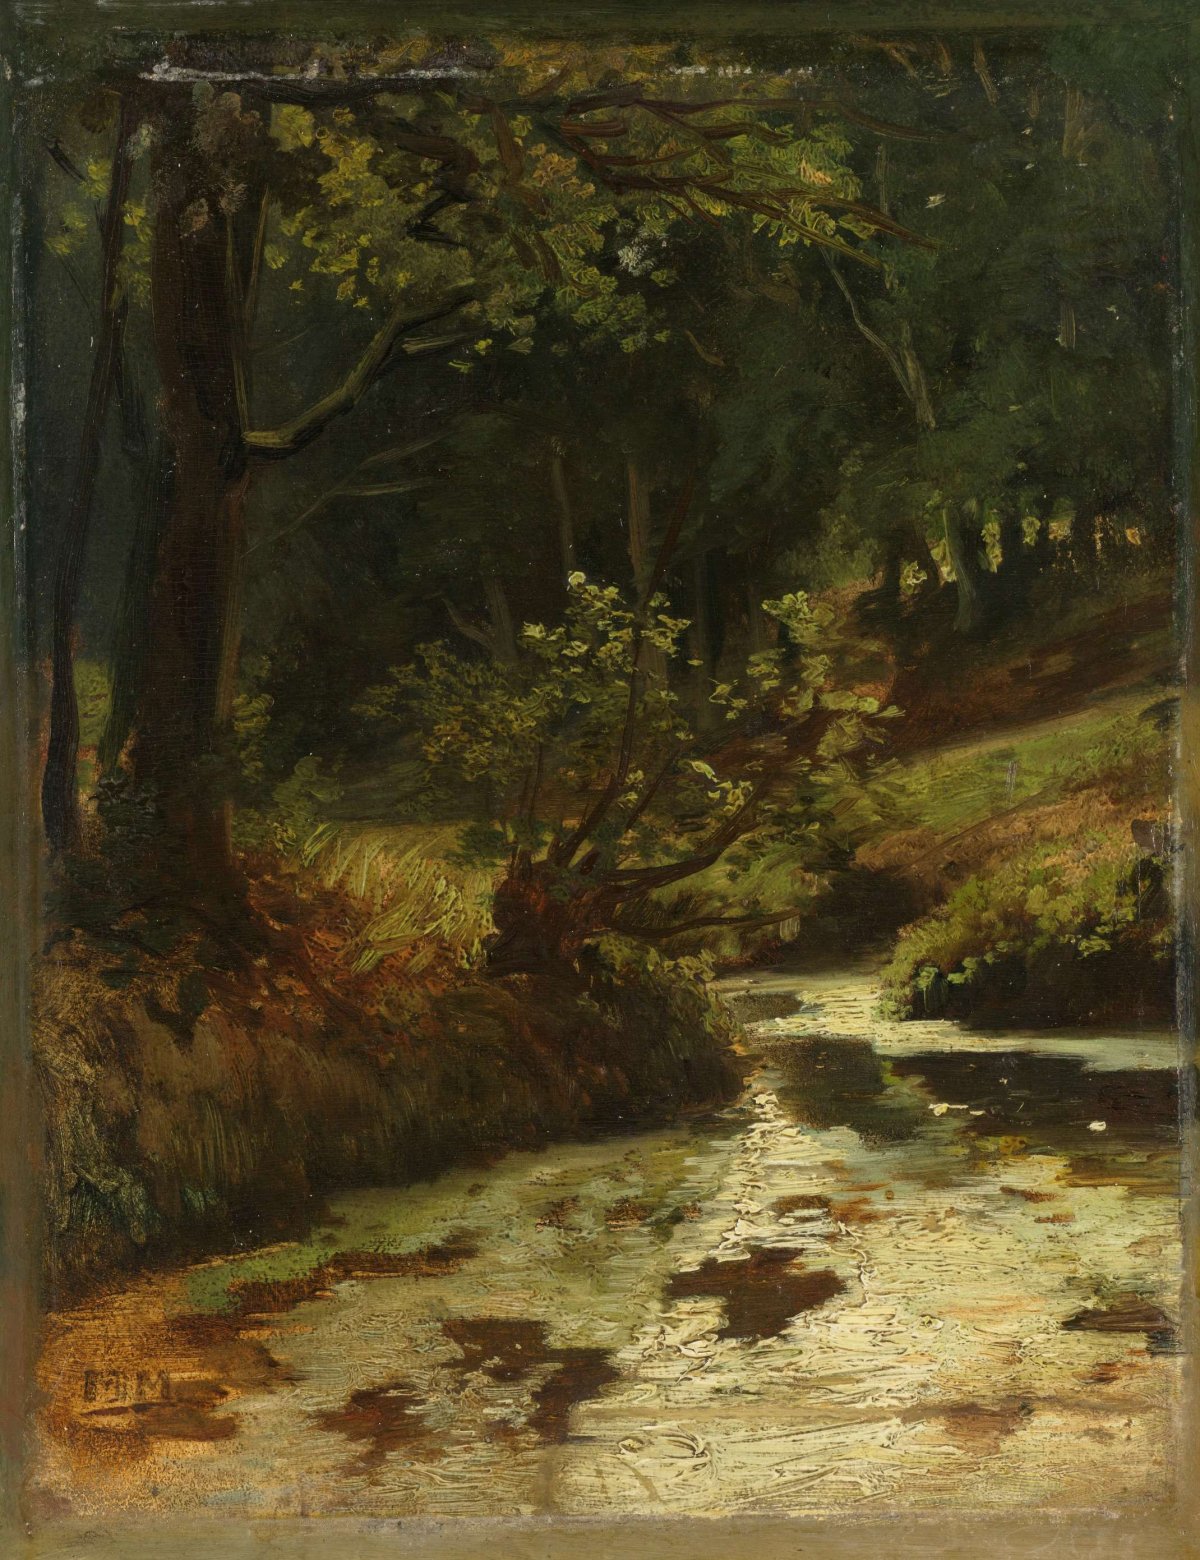 Brook in the Woods near Oosterbeek, Matthijs Maris, c. 1860